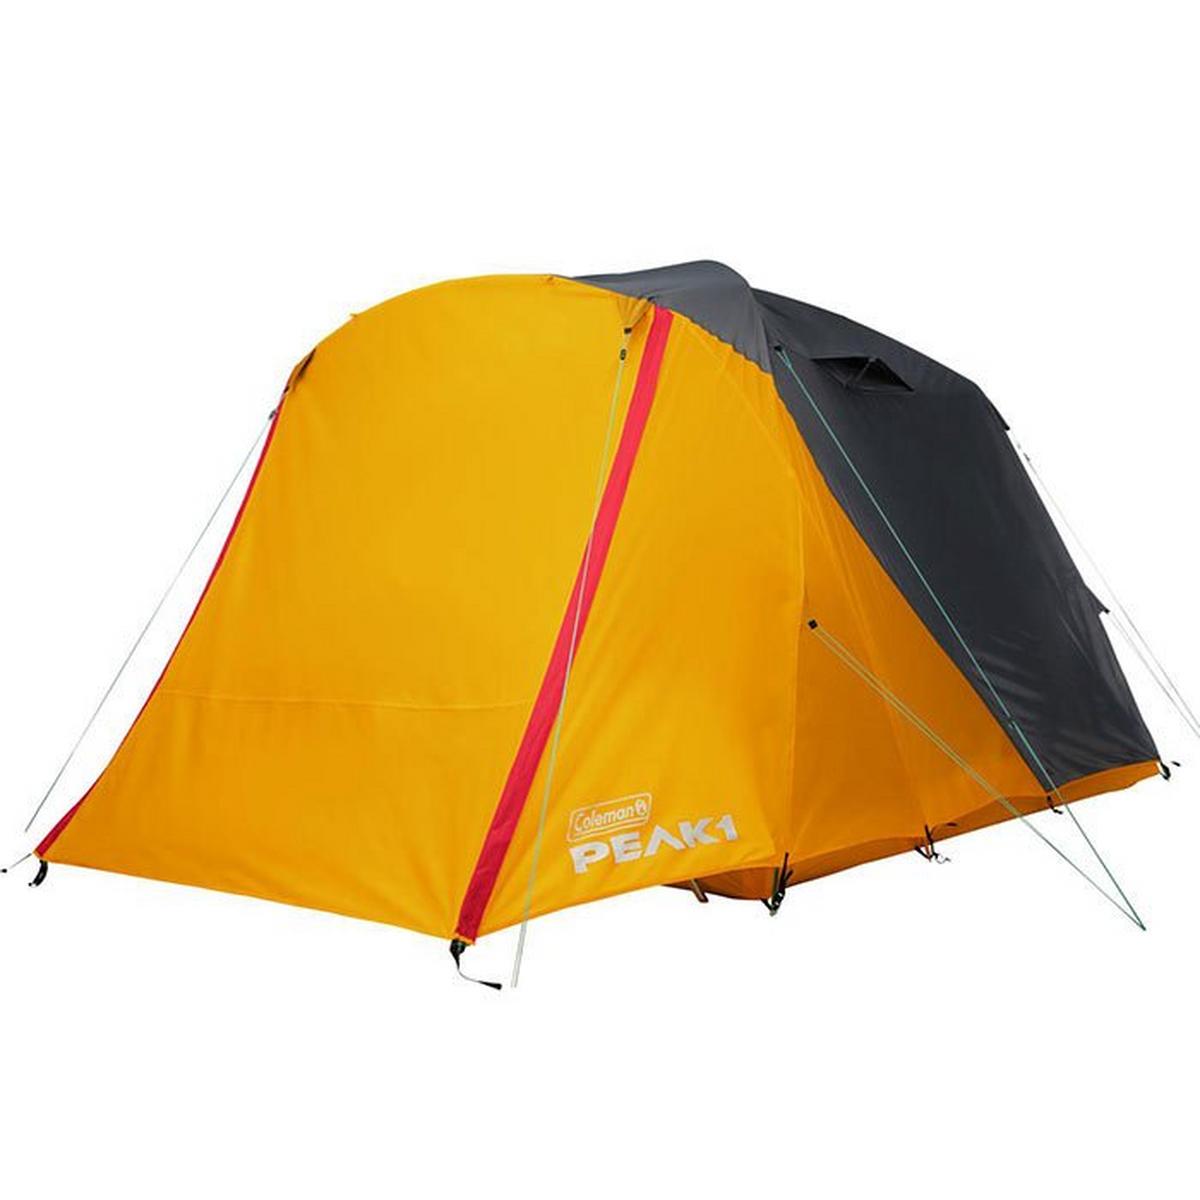 PEAK1™ 6P Dome Tent